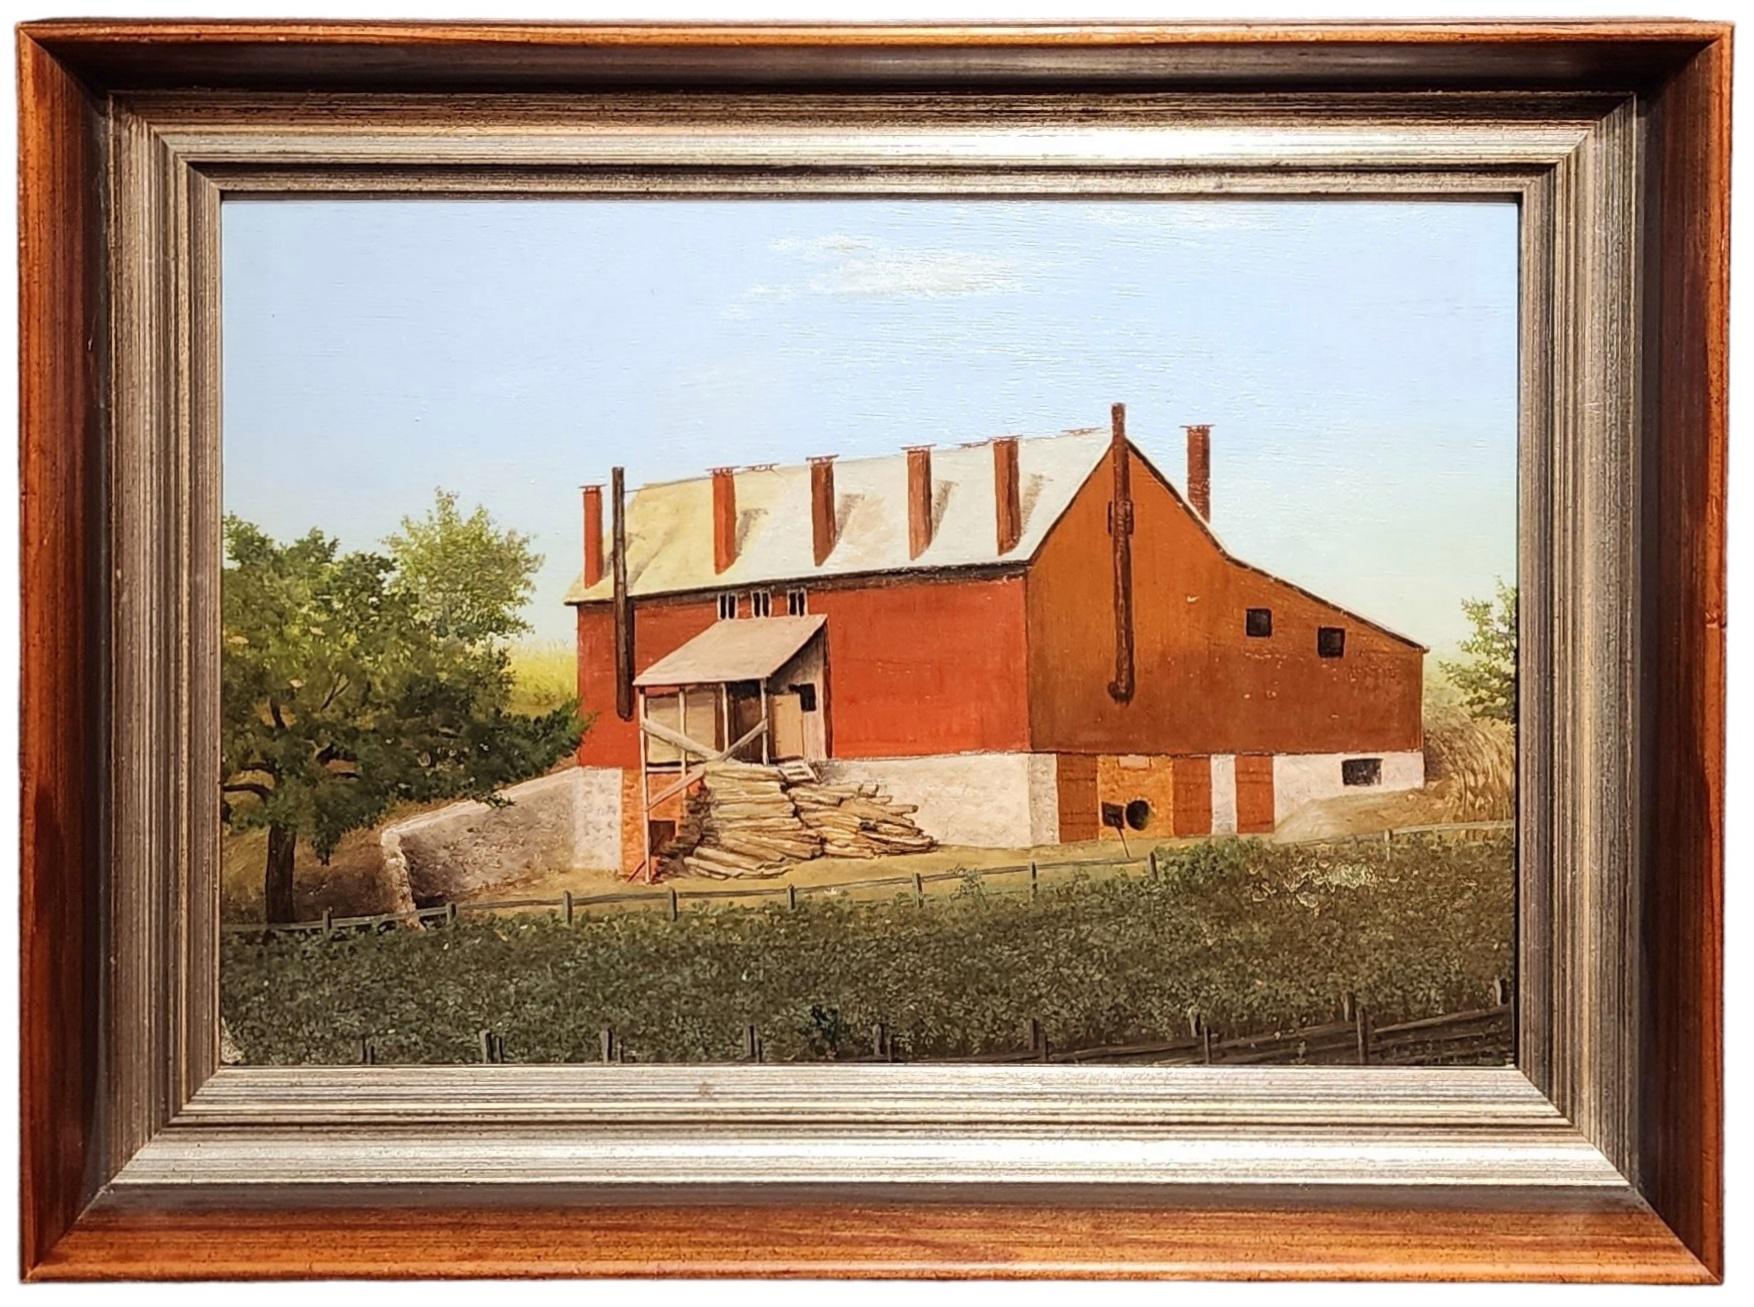 Landscape Painting Unknown - The Barn, Amérique rurale, ferme américaine, peinture de grange rouge